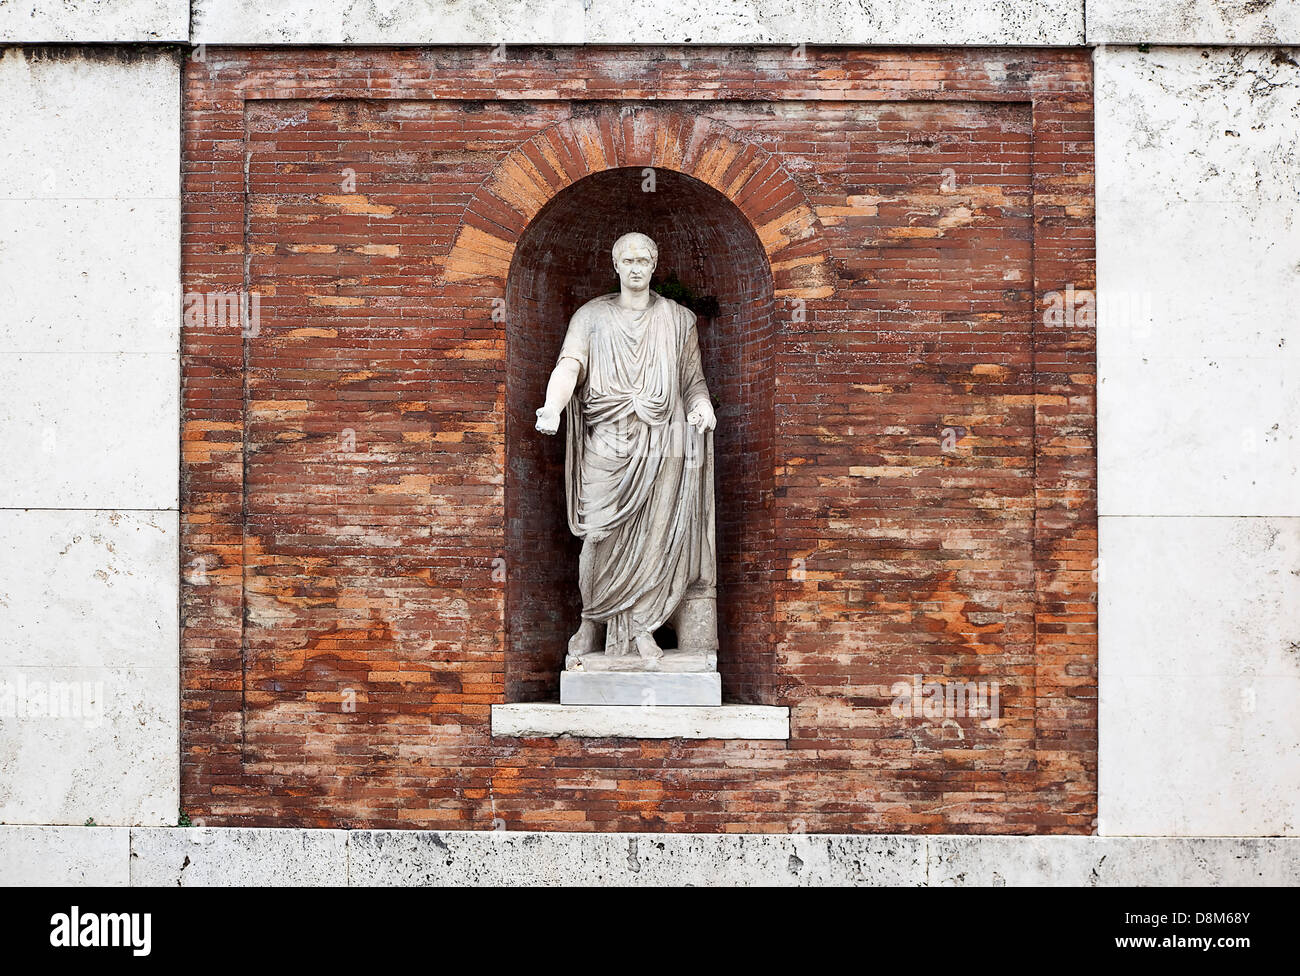 Italy, Lazio, Rome, Niche statue in the walls beneath Piazza del Quirinale. Stock Photo